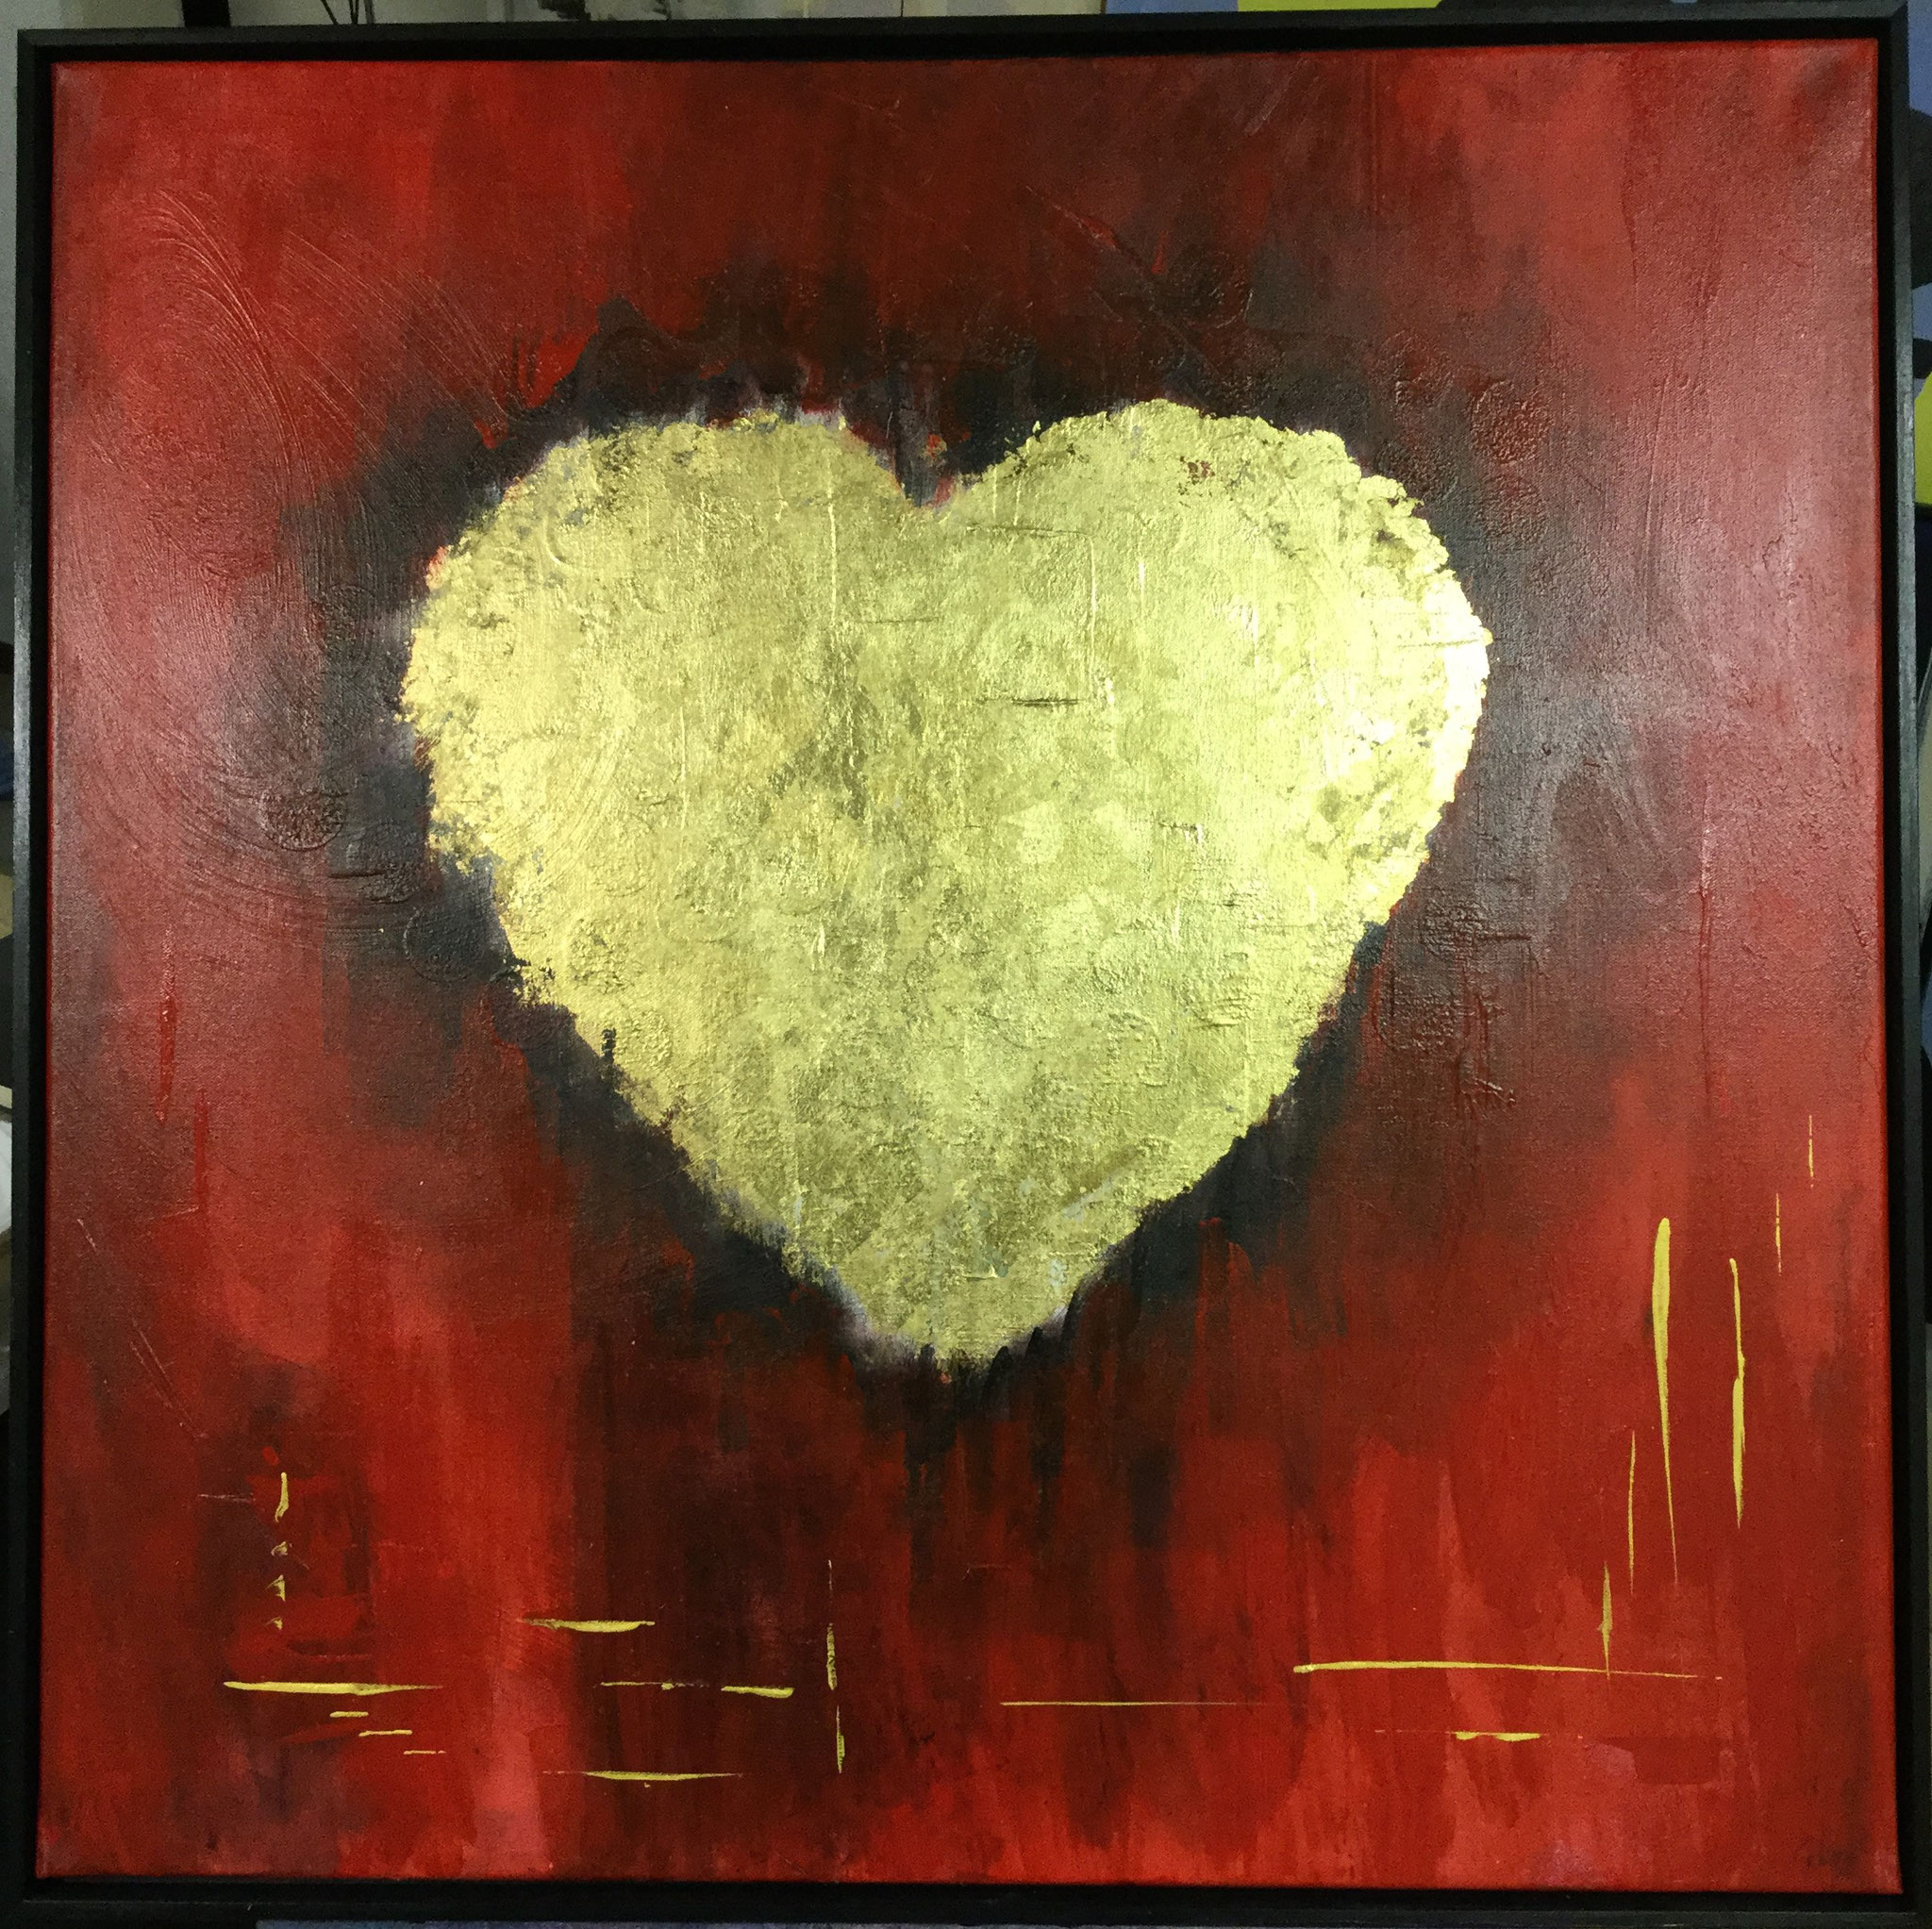 golden heart - 83x83 cm (framed) - sold